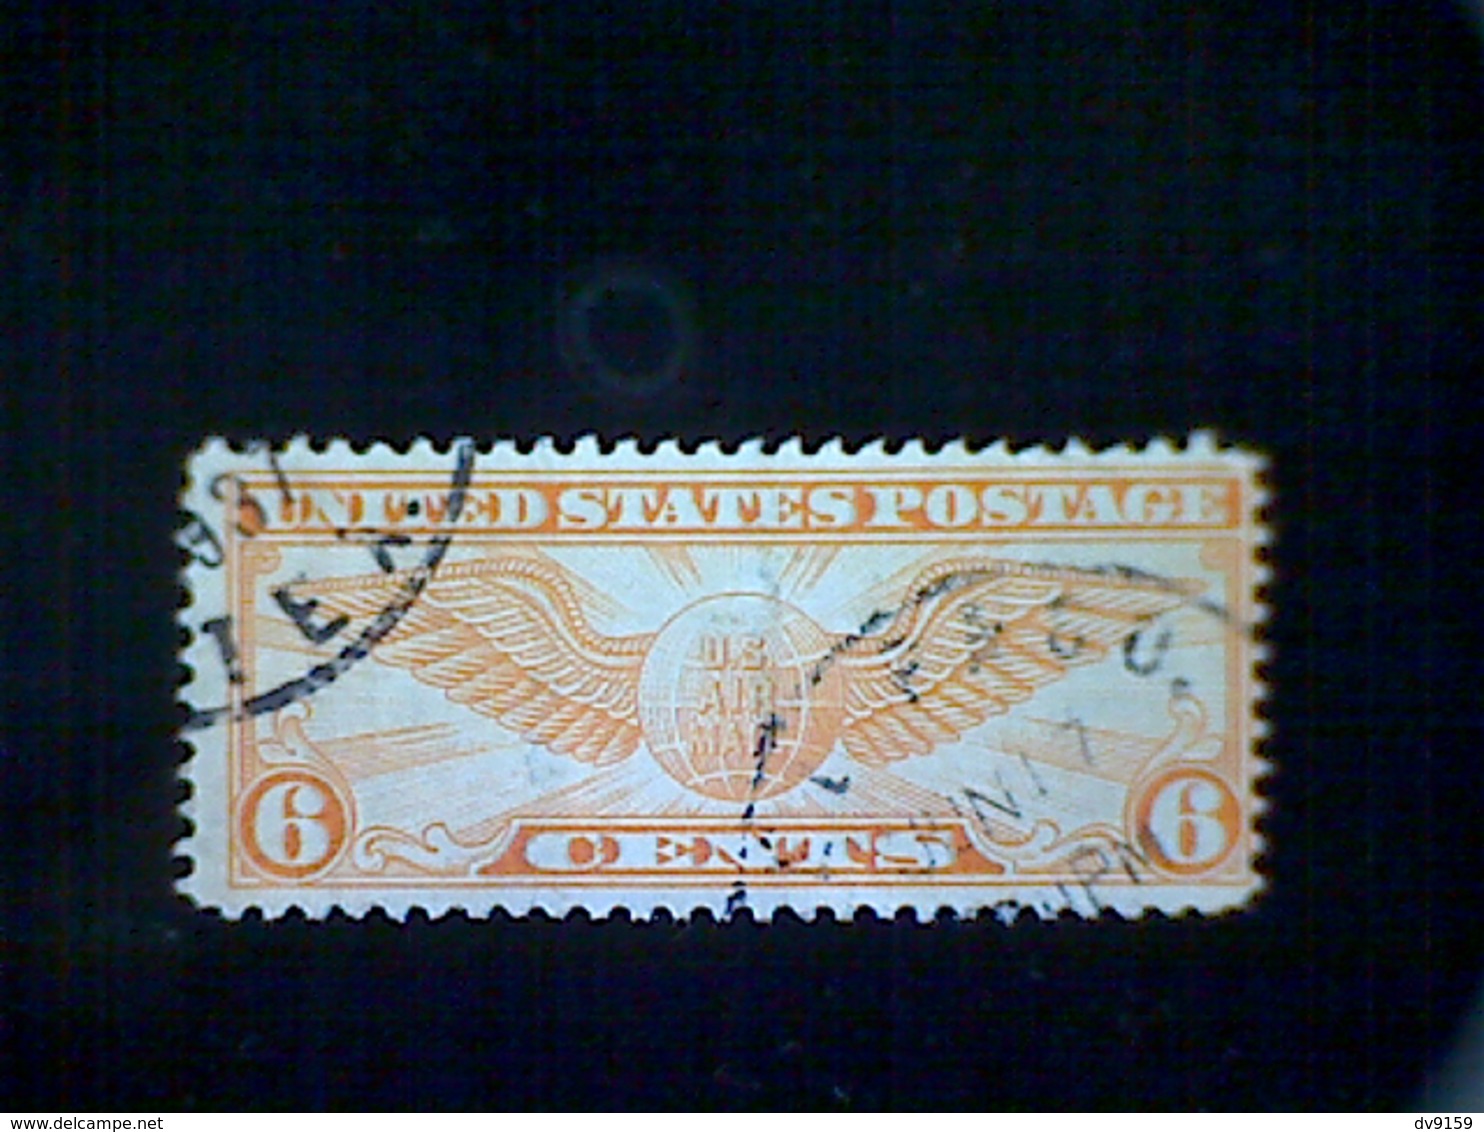 United States, Scott #C19, Used(o), 1934 Air Mail, Winged Globe, 6¢, Dull Orange - 1a. 1918-1940 Used